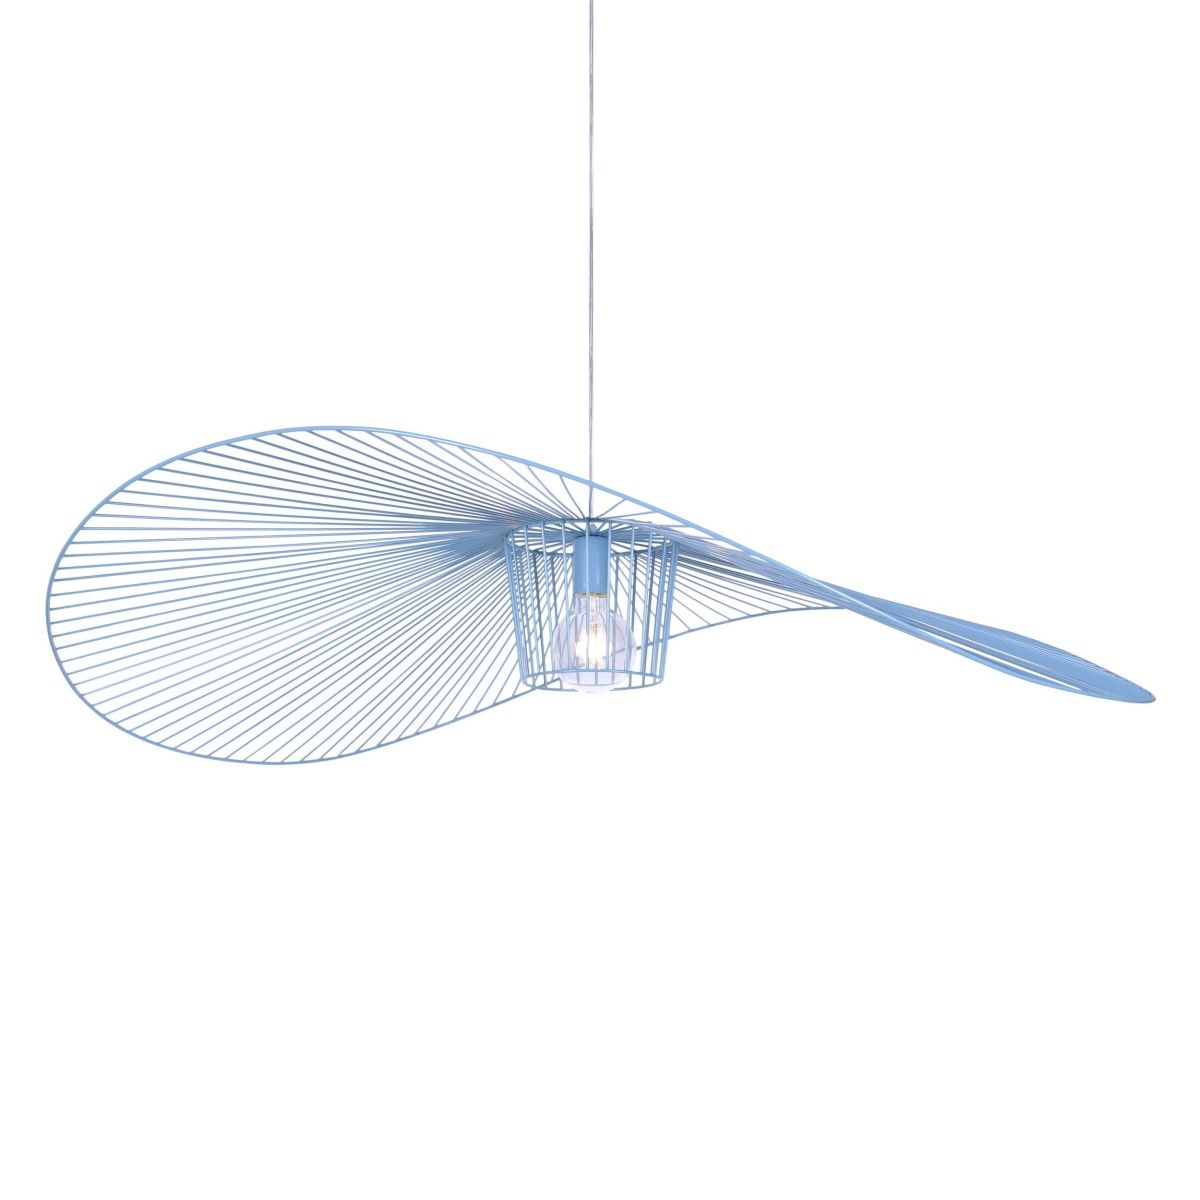 Designerska lampa wisząca Kapelusz - niebieski klosz